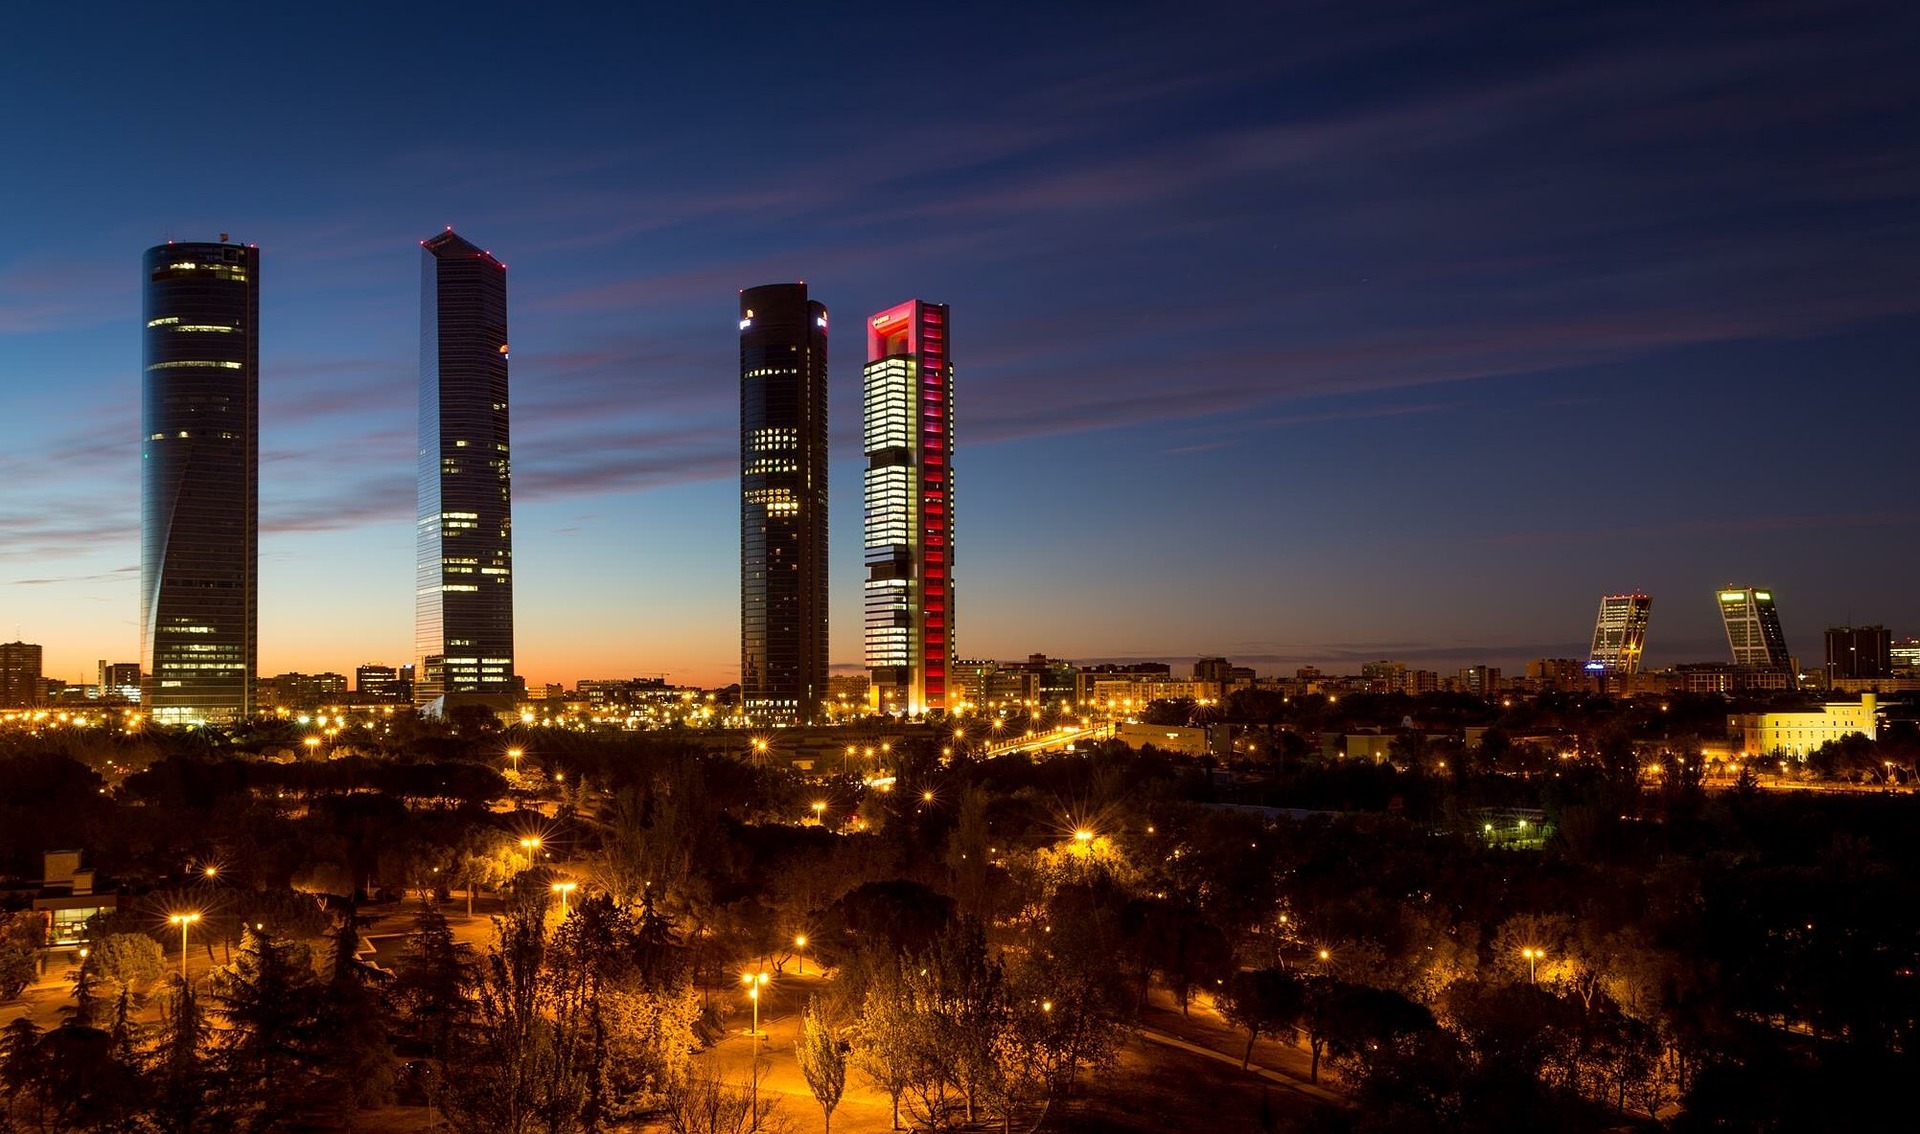 Madrids skyline